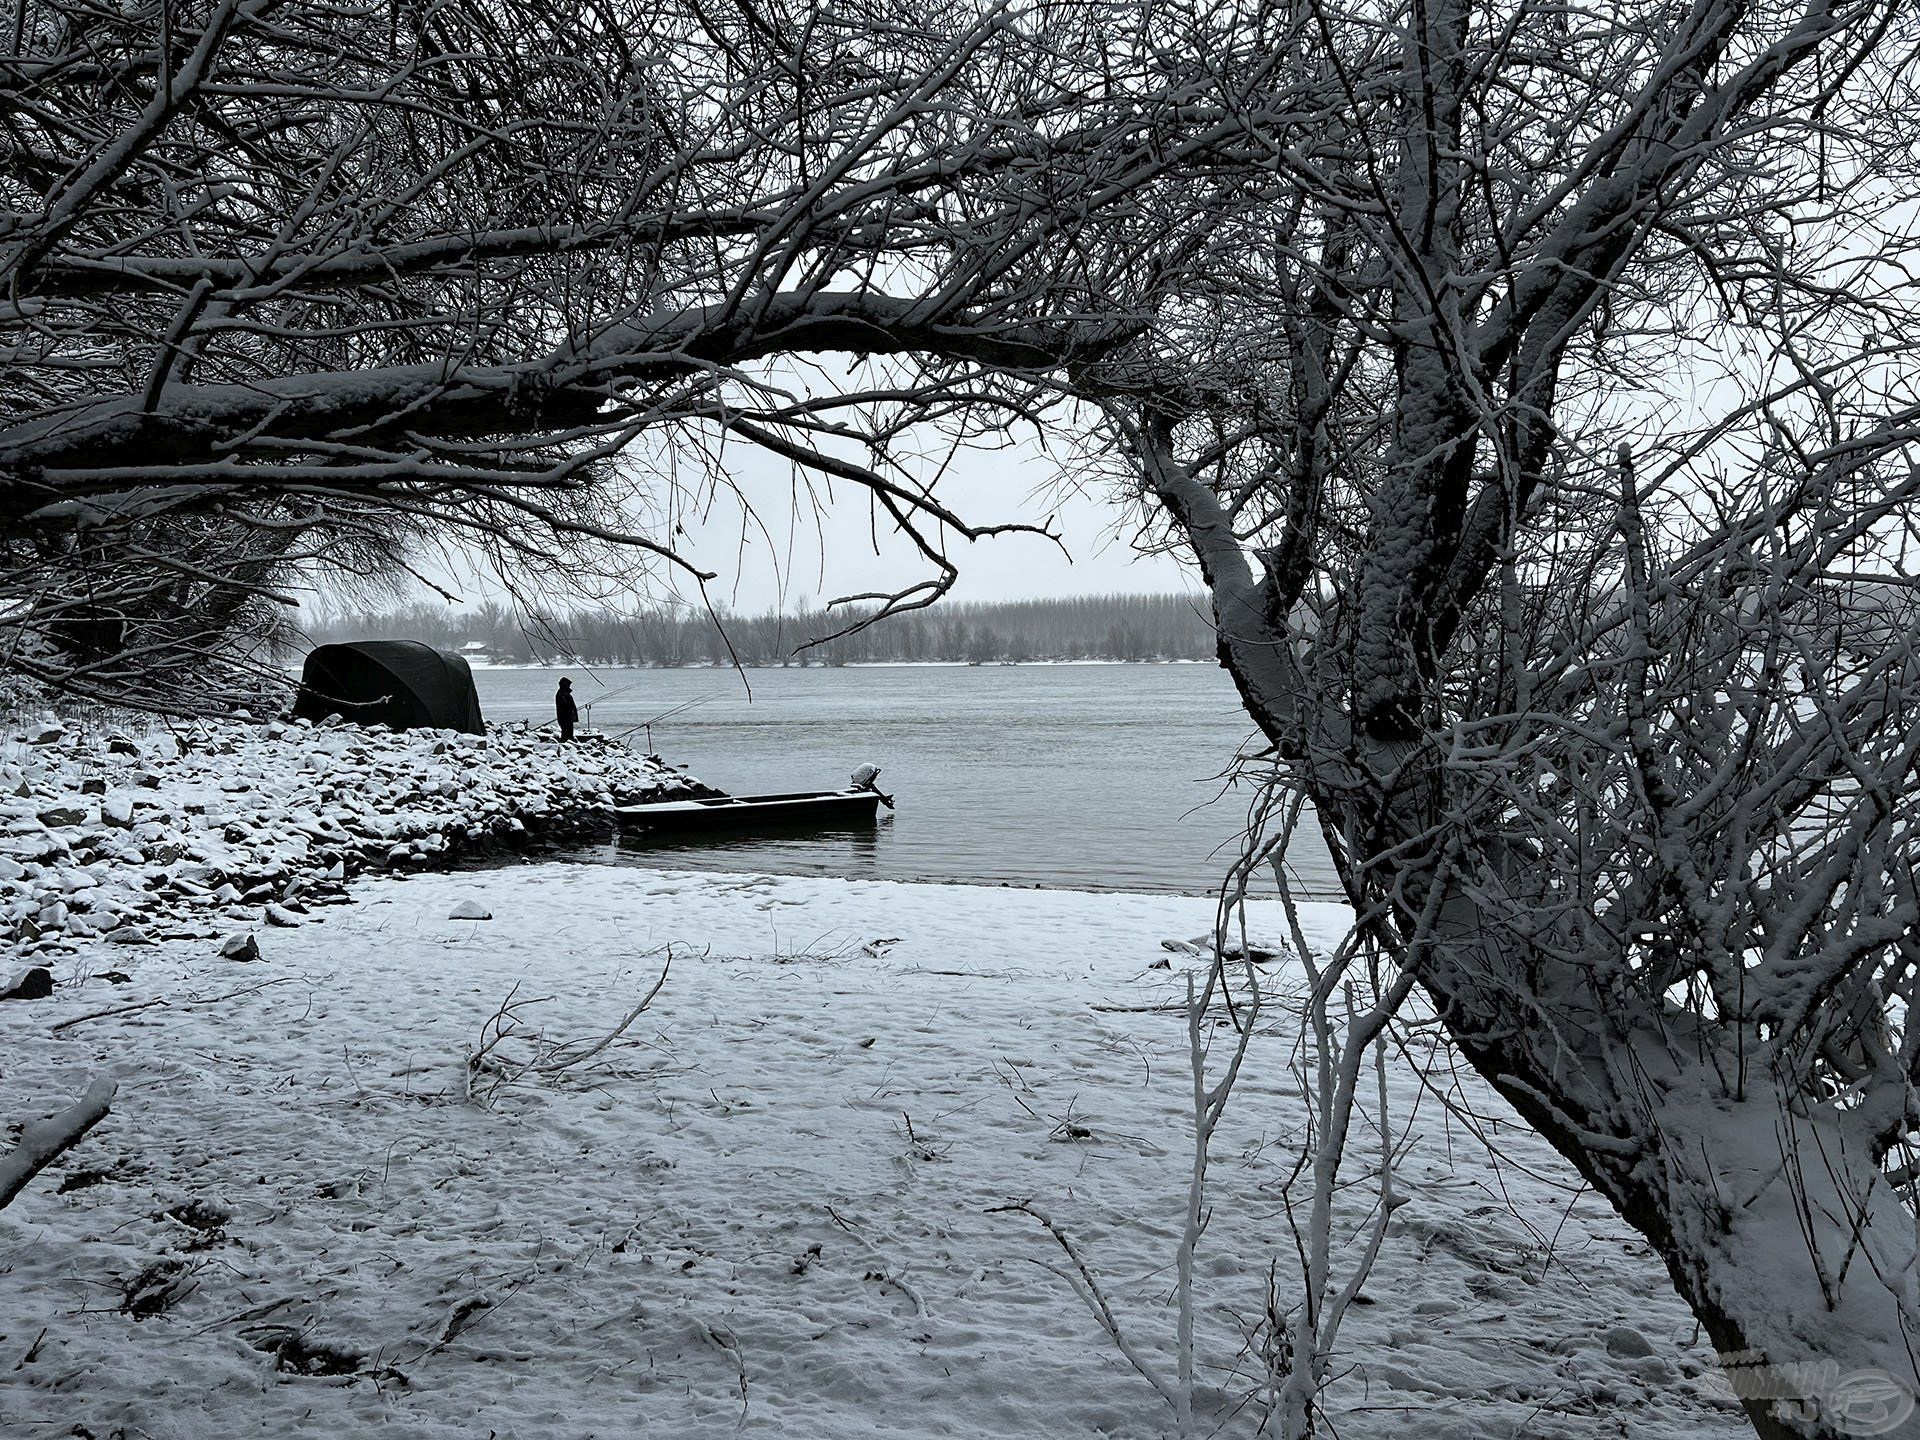 A tél kellős közepén, a leghidegebb időszakban látogattam el a Duna folyóra